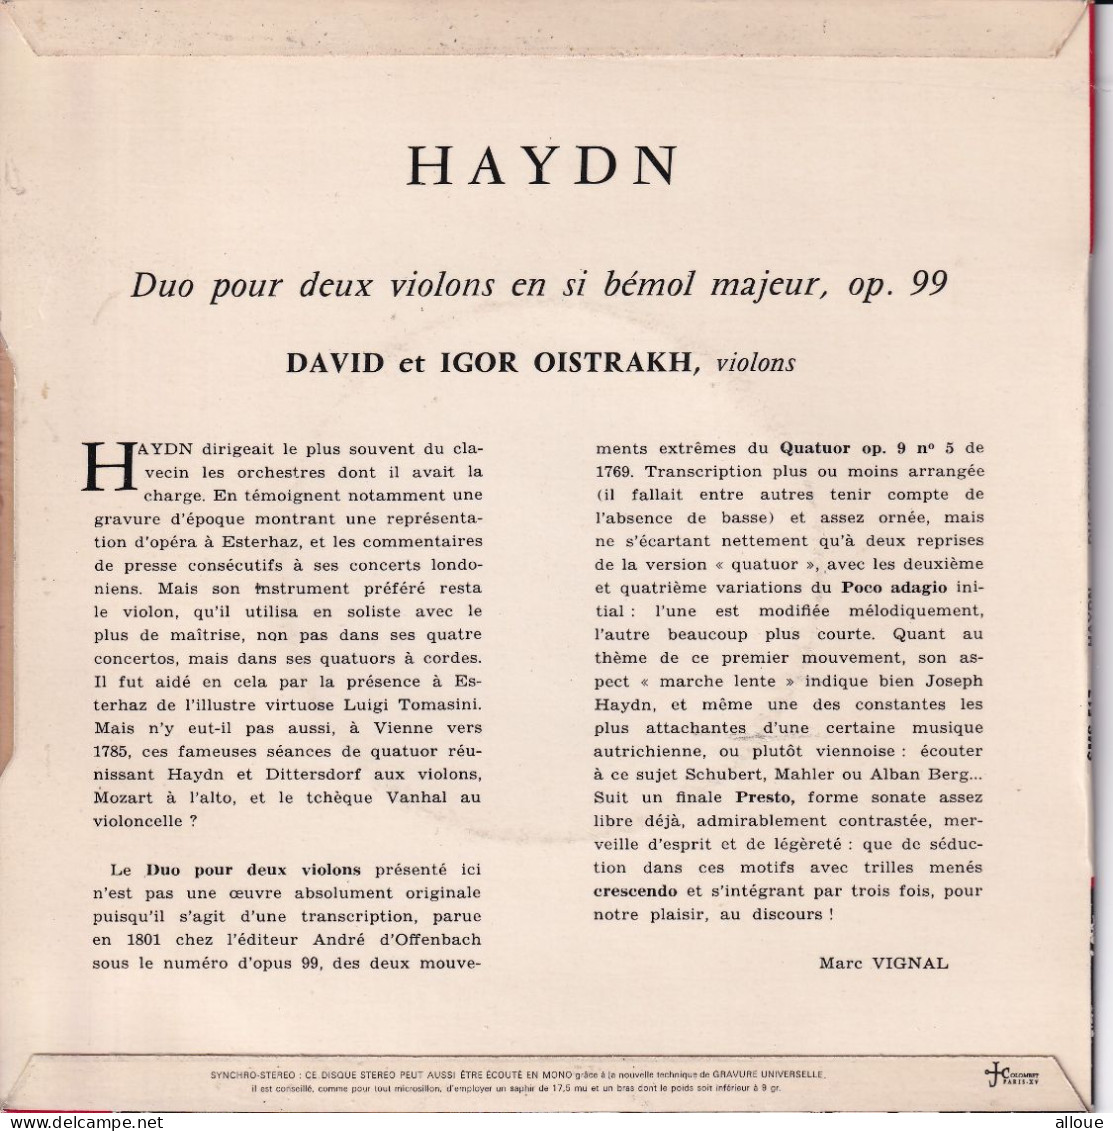 DAVID & IGOR OISTRAKH JOUENT HAYDN - FR EP - DUO POUR DEUX VIOLONS EN SI BEMOL MAJEUR, OP. 99 - Clásica